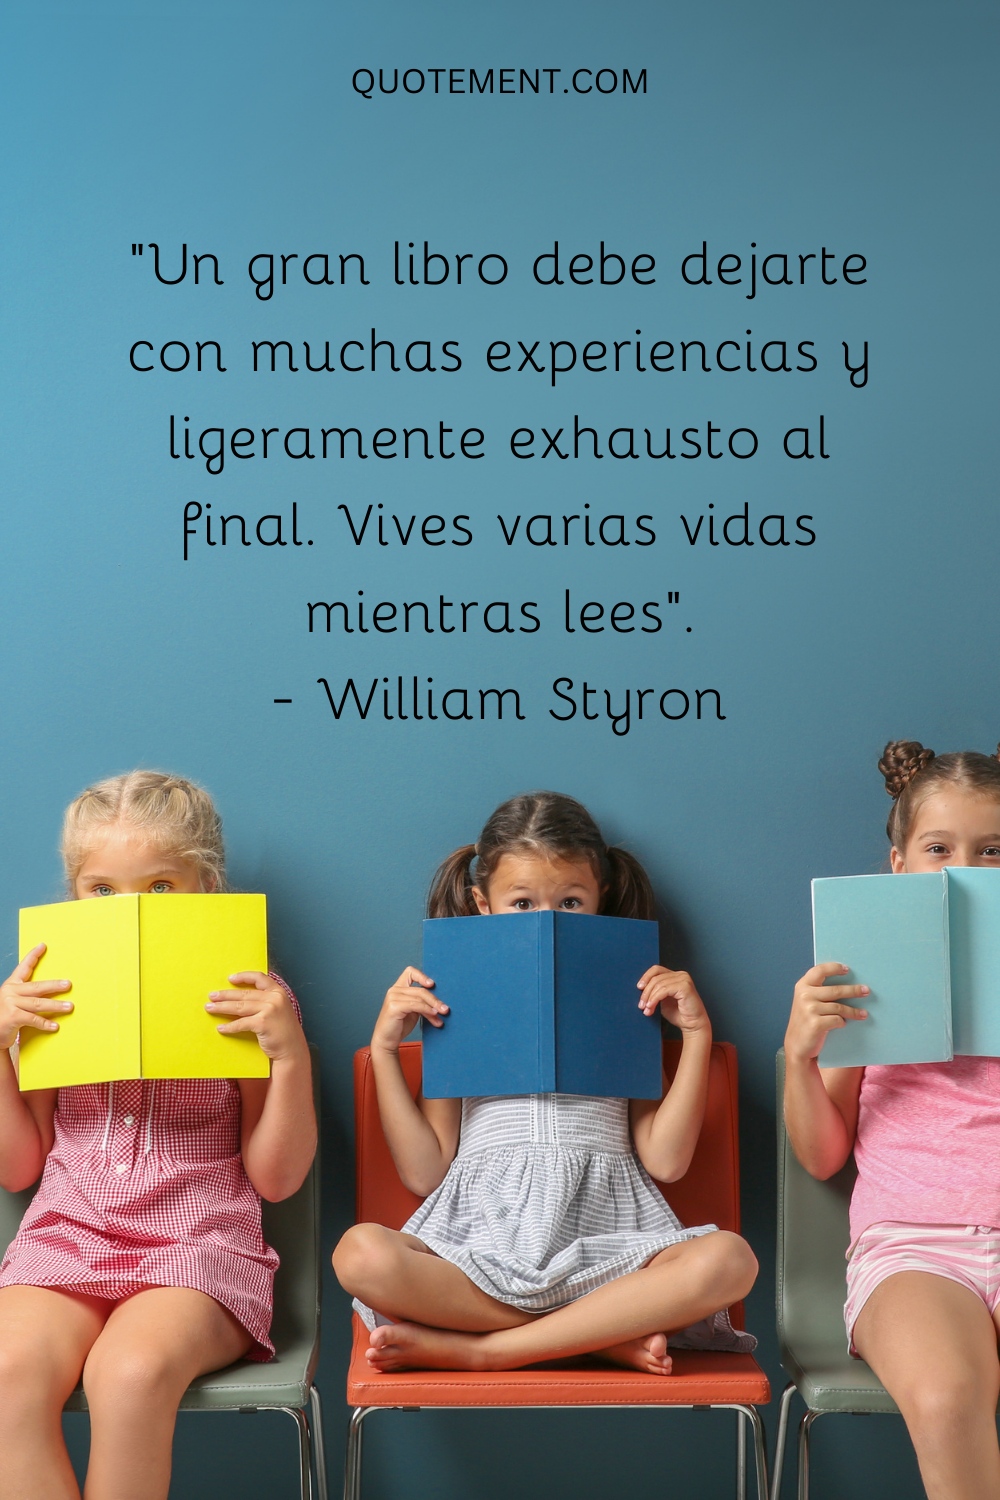 "Un gran libro debe dejarte con muchas experiencias y ligeramente exhausto al final. Vives varias vidas mientras lees". - William Styron